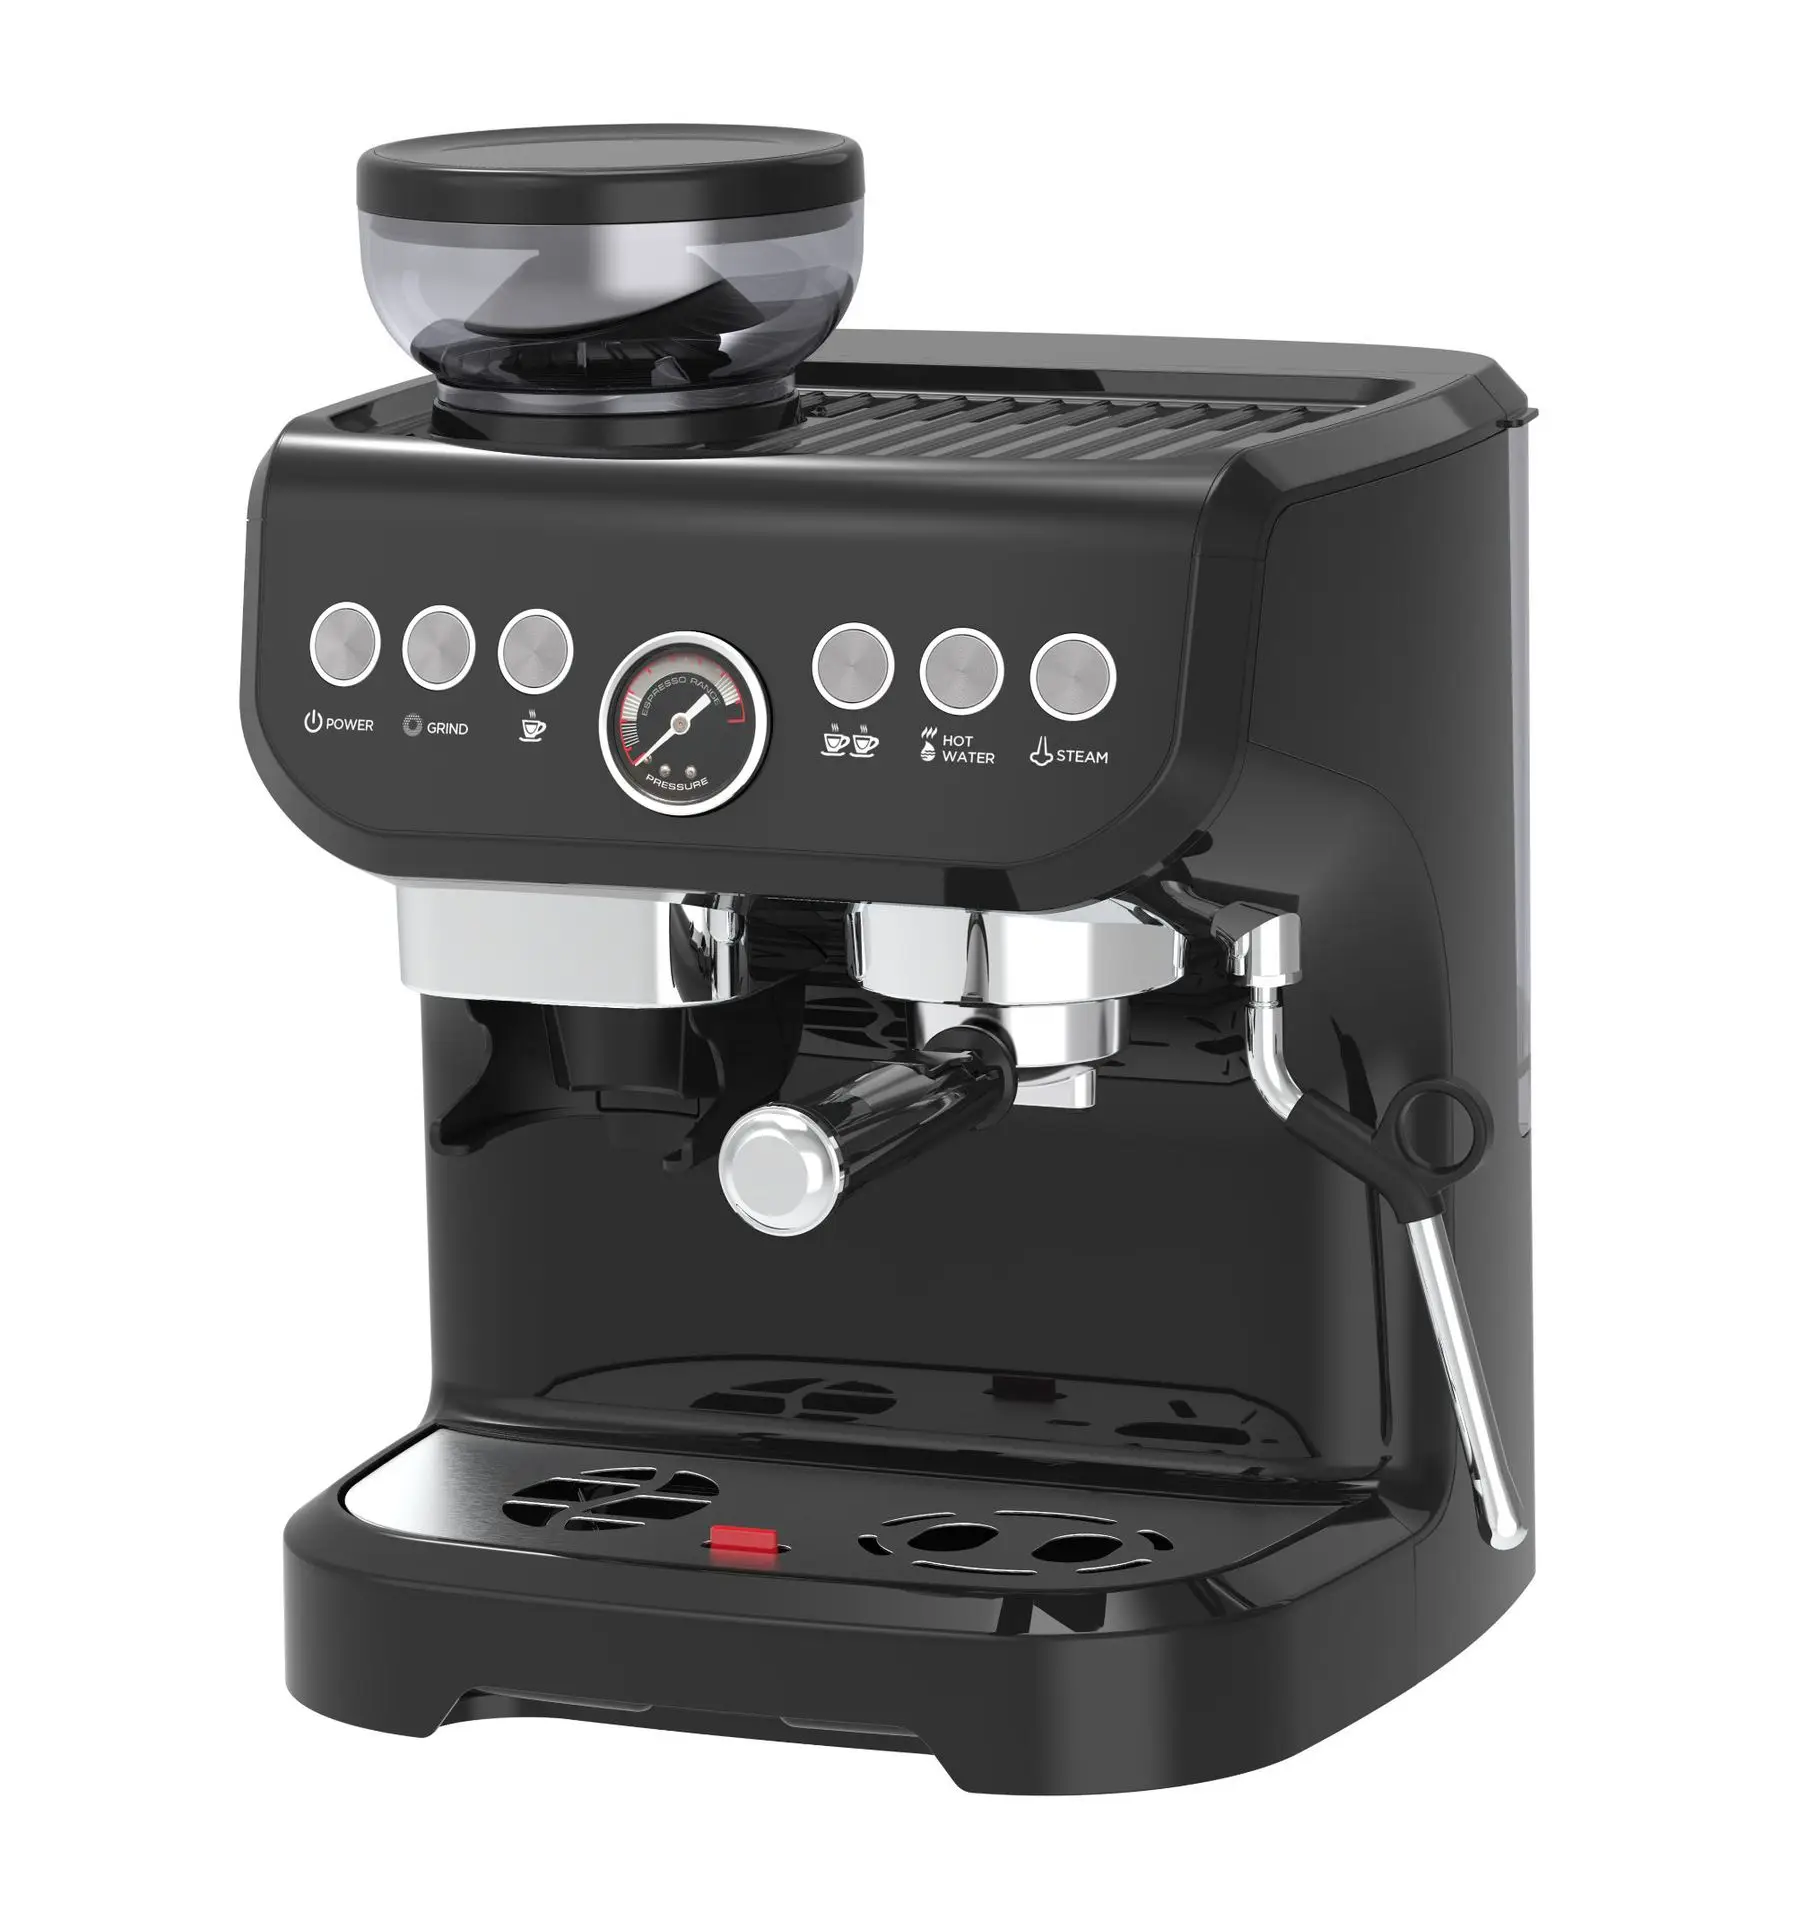 https://ae01.alicdn.com/kf/S6487f295cfae4e6b914d96c5a8a0d2d9w/Cafetera-espresso-con-molinillo-m-quina-de-caf-autom-tica-el-ctrica-inteligente-manual.jpg